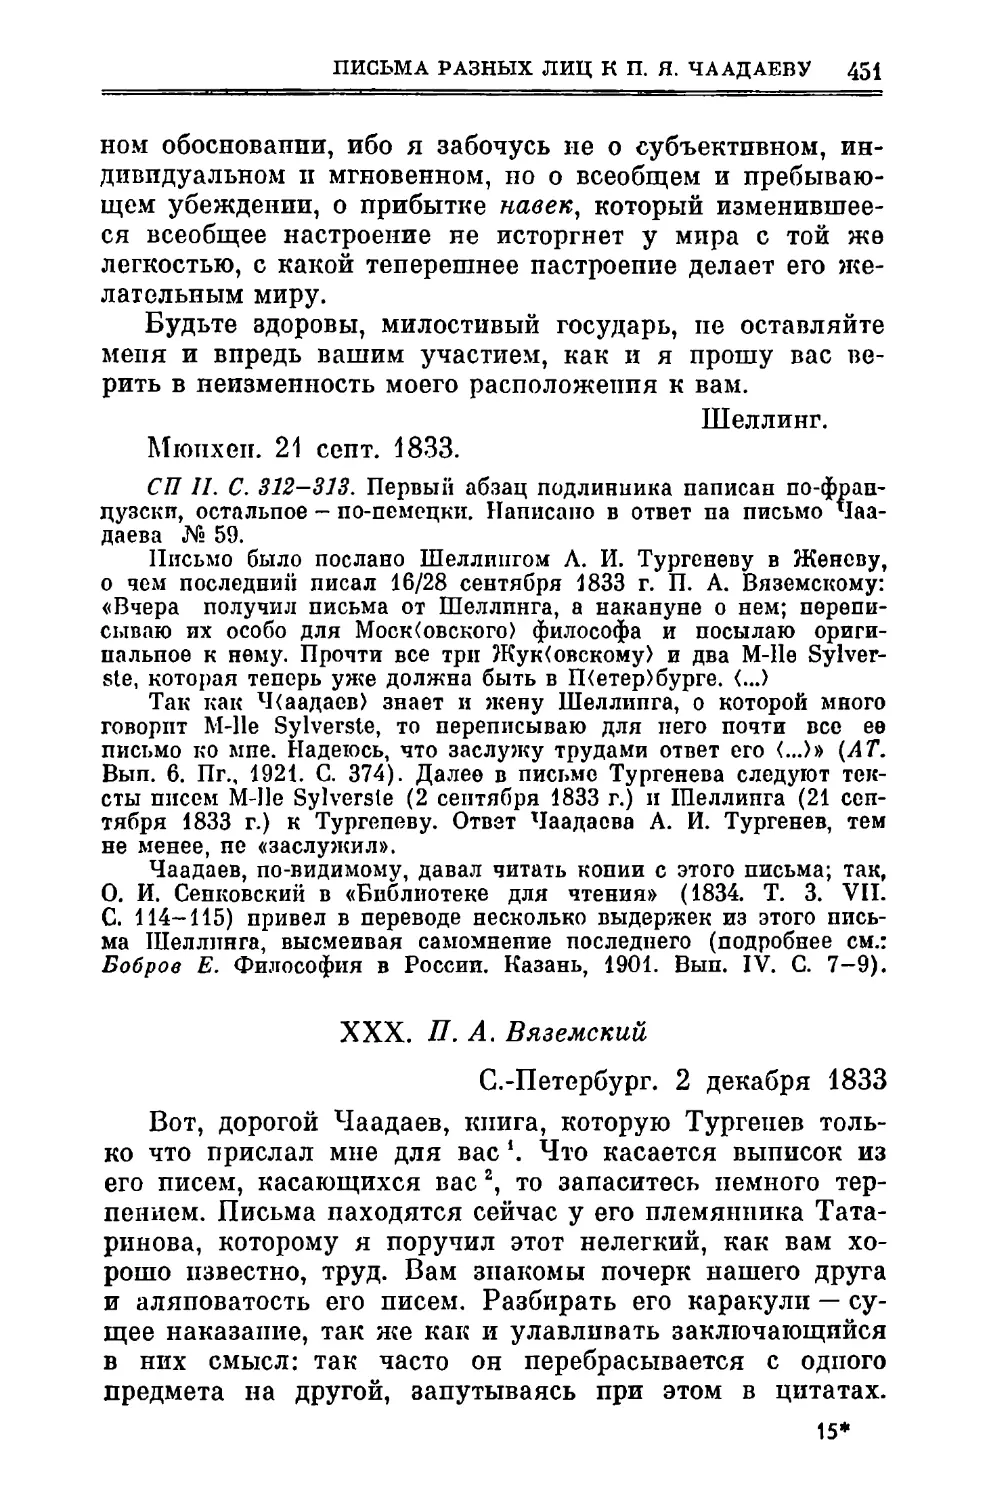 XXX. Вяземский П.A. 2.XII.1833